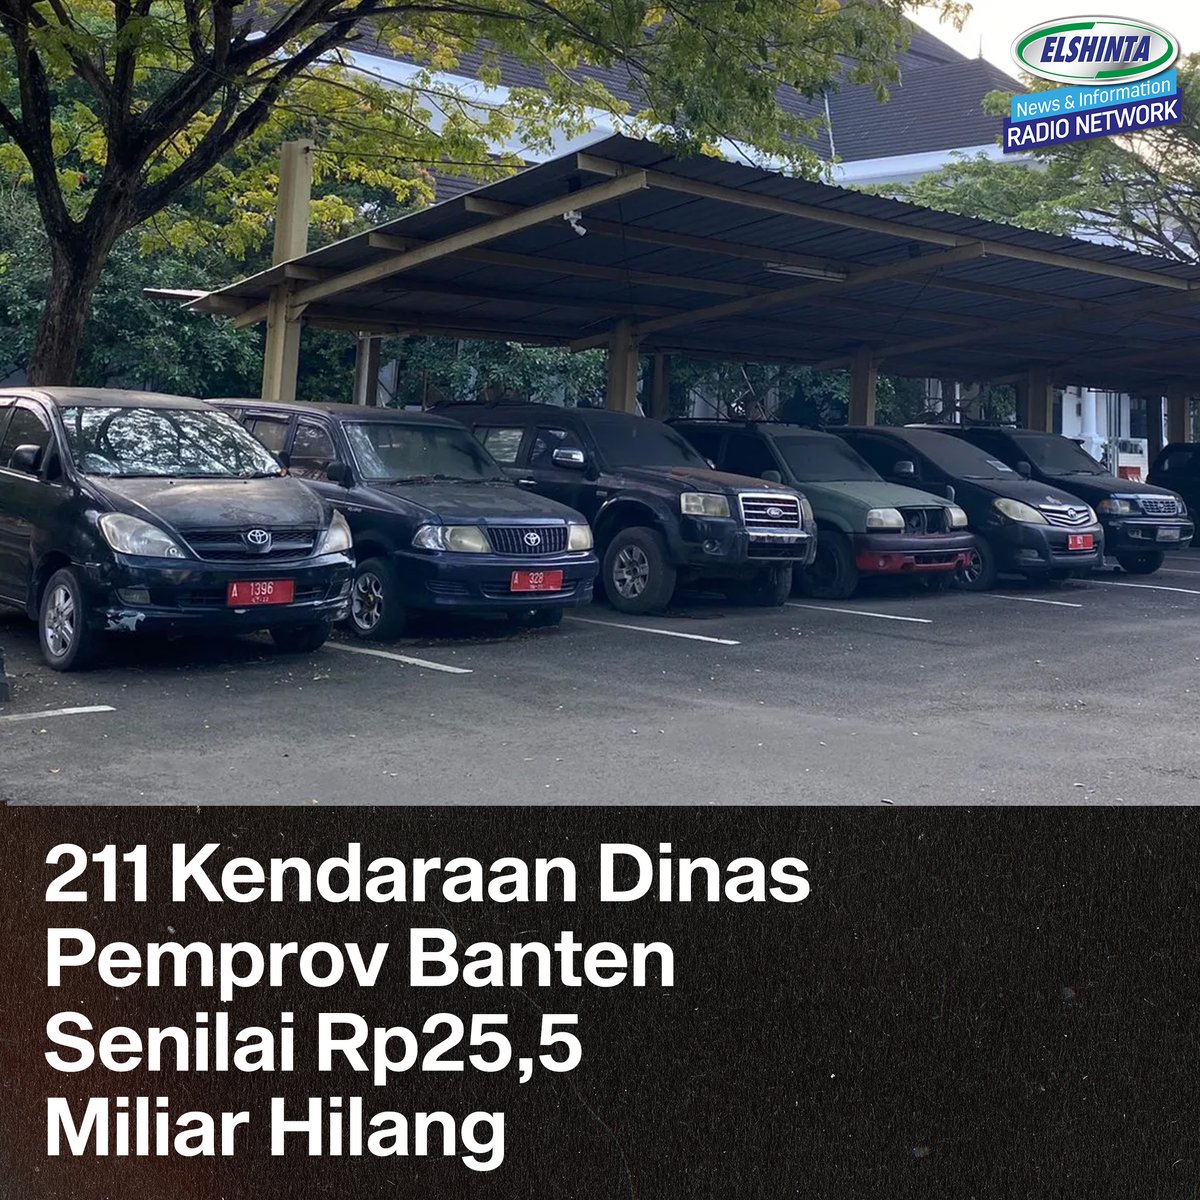 Sebanyak 211 kendaraan dinas milik Pemerintah Provinsi (Pemprov) Banten tidak diketahui keberadaannya alias hilang. Ratusan kendaraan itu senilai Rp 25 milliar.

Hal itu diketahui dari temuan Badan Pemeriksaan Keuangan (BPK) Provinsi Banten yang tercantum dalam Laporan Hasil